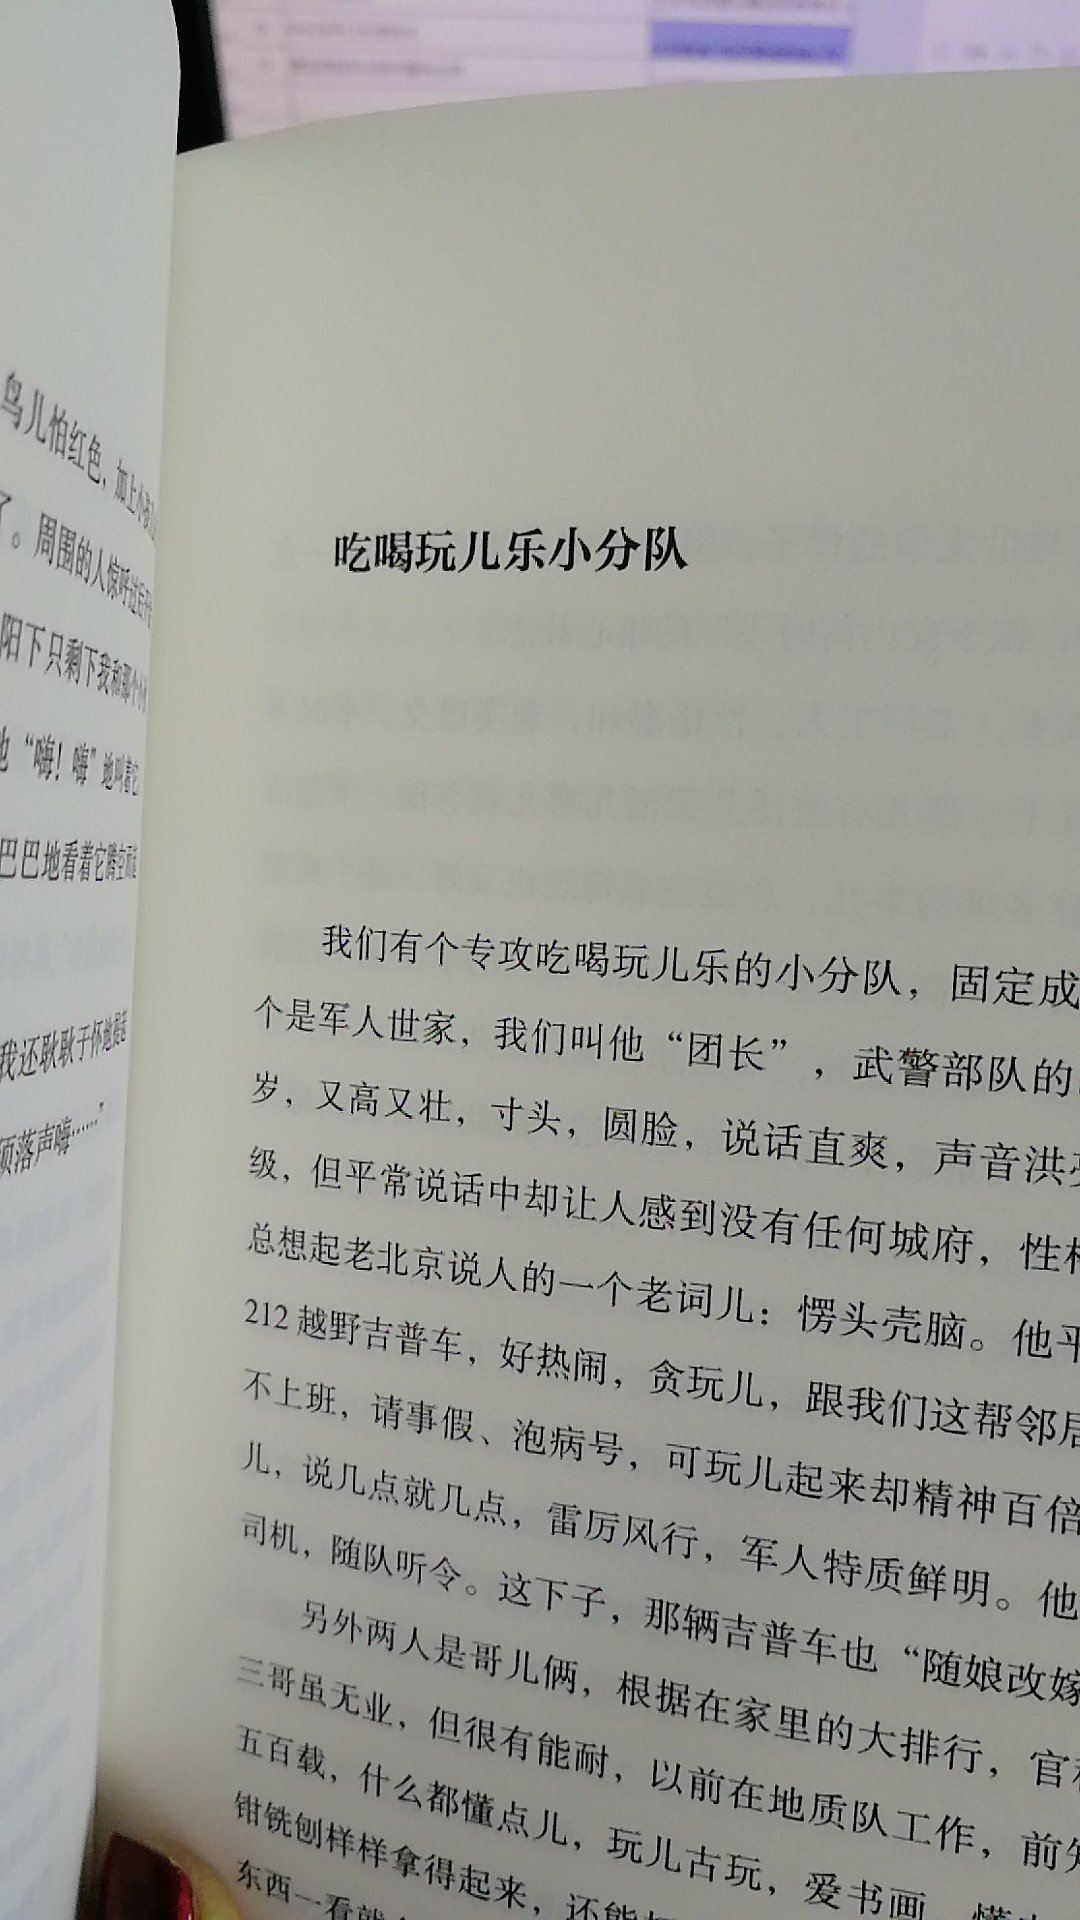 [cp]还是这书更有意思，一是本身于谦就是相声演员，段子应该就不少，二就是他是北京人，书里北京话就很多，觉得书上写的就像是身边发生的一样，代入感很强。 ???[/cp]